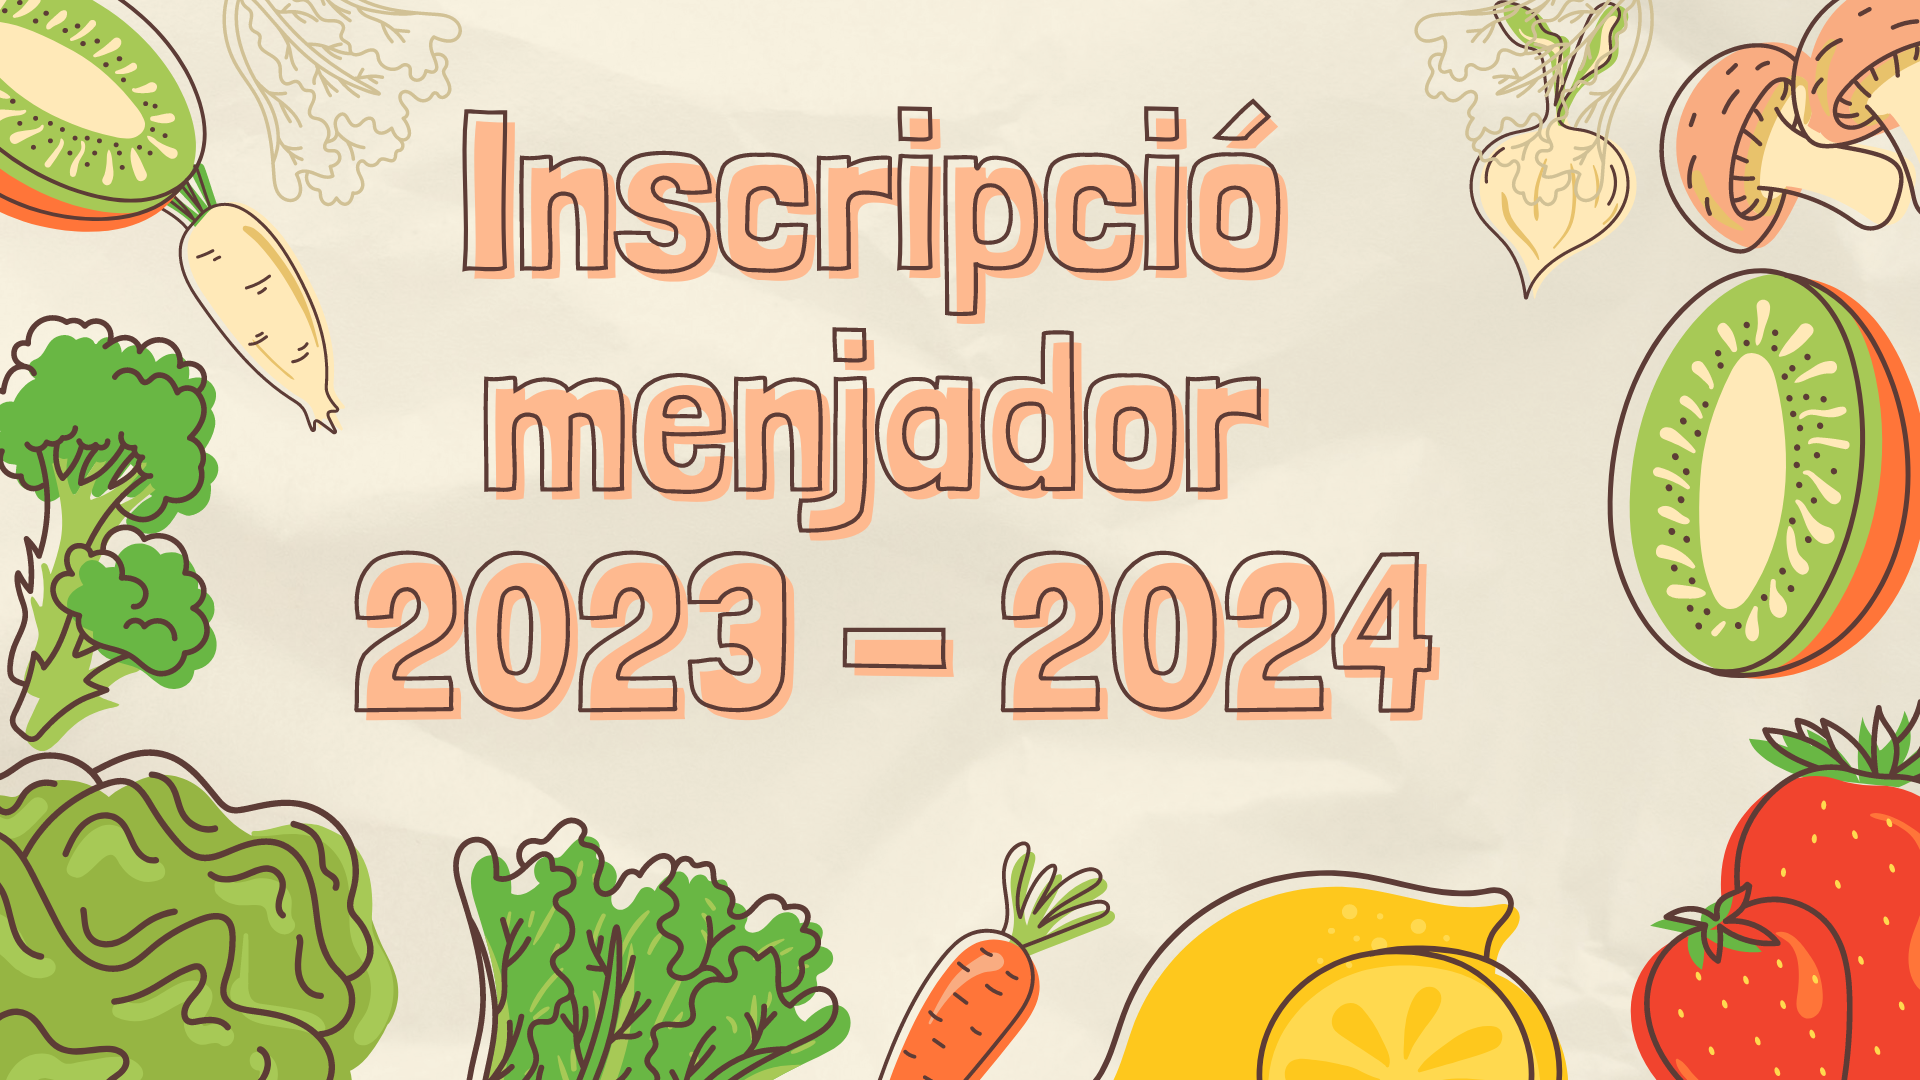 Inscripcio menjador 2023 2024